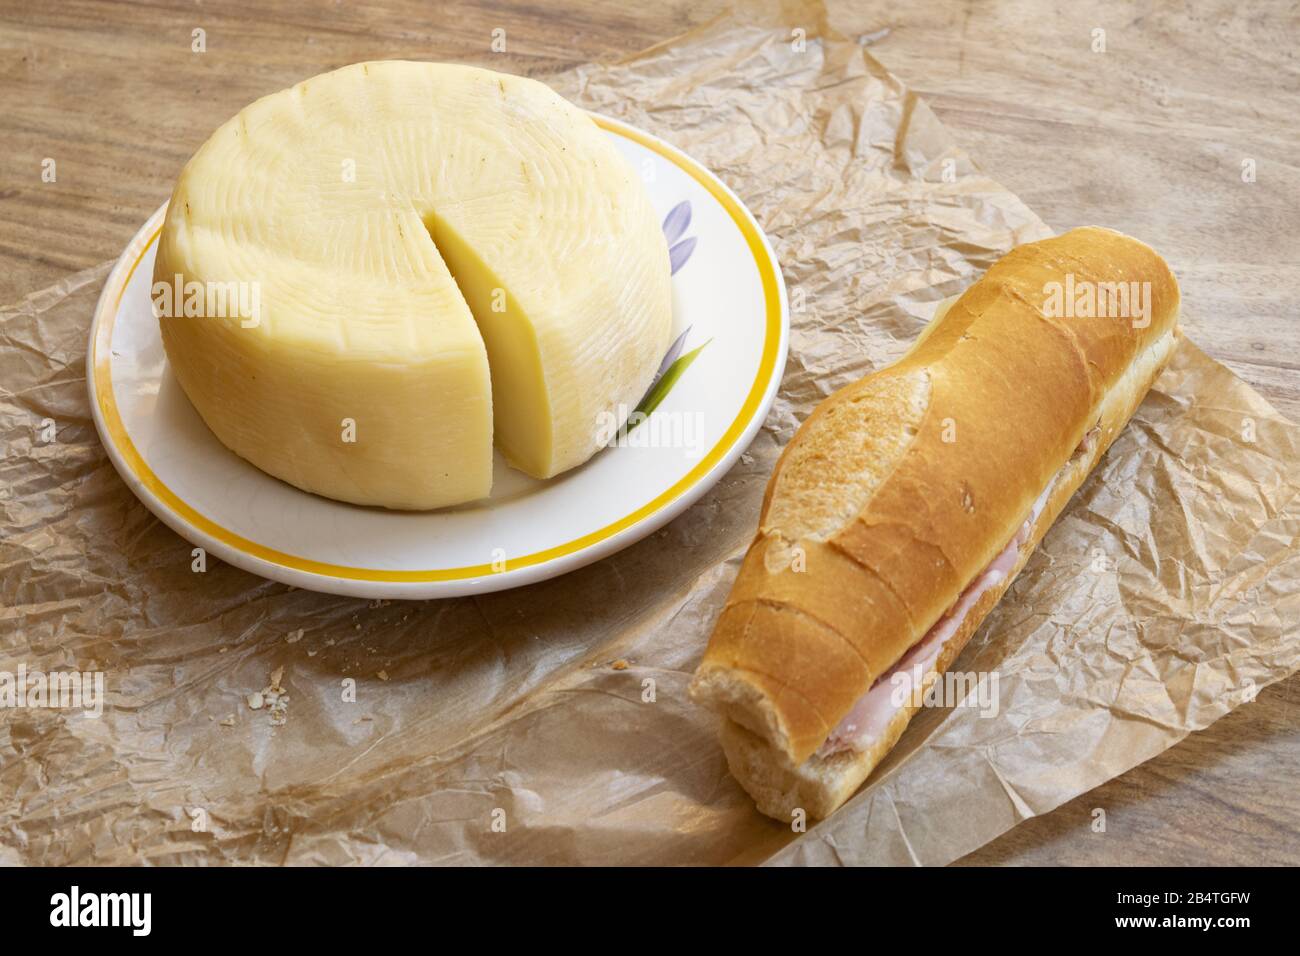 houagie remplie de fromage pecorino et de jambon cuit Banque D'Images